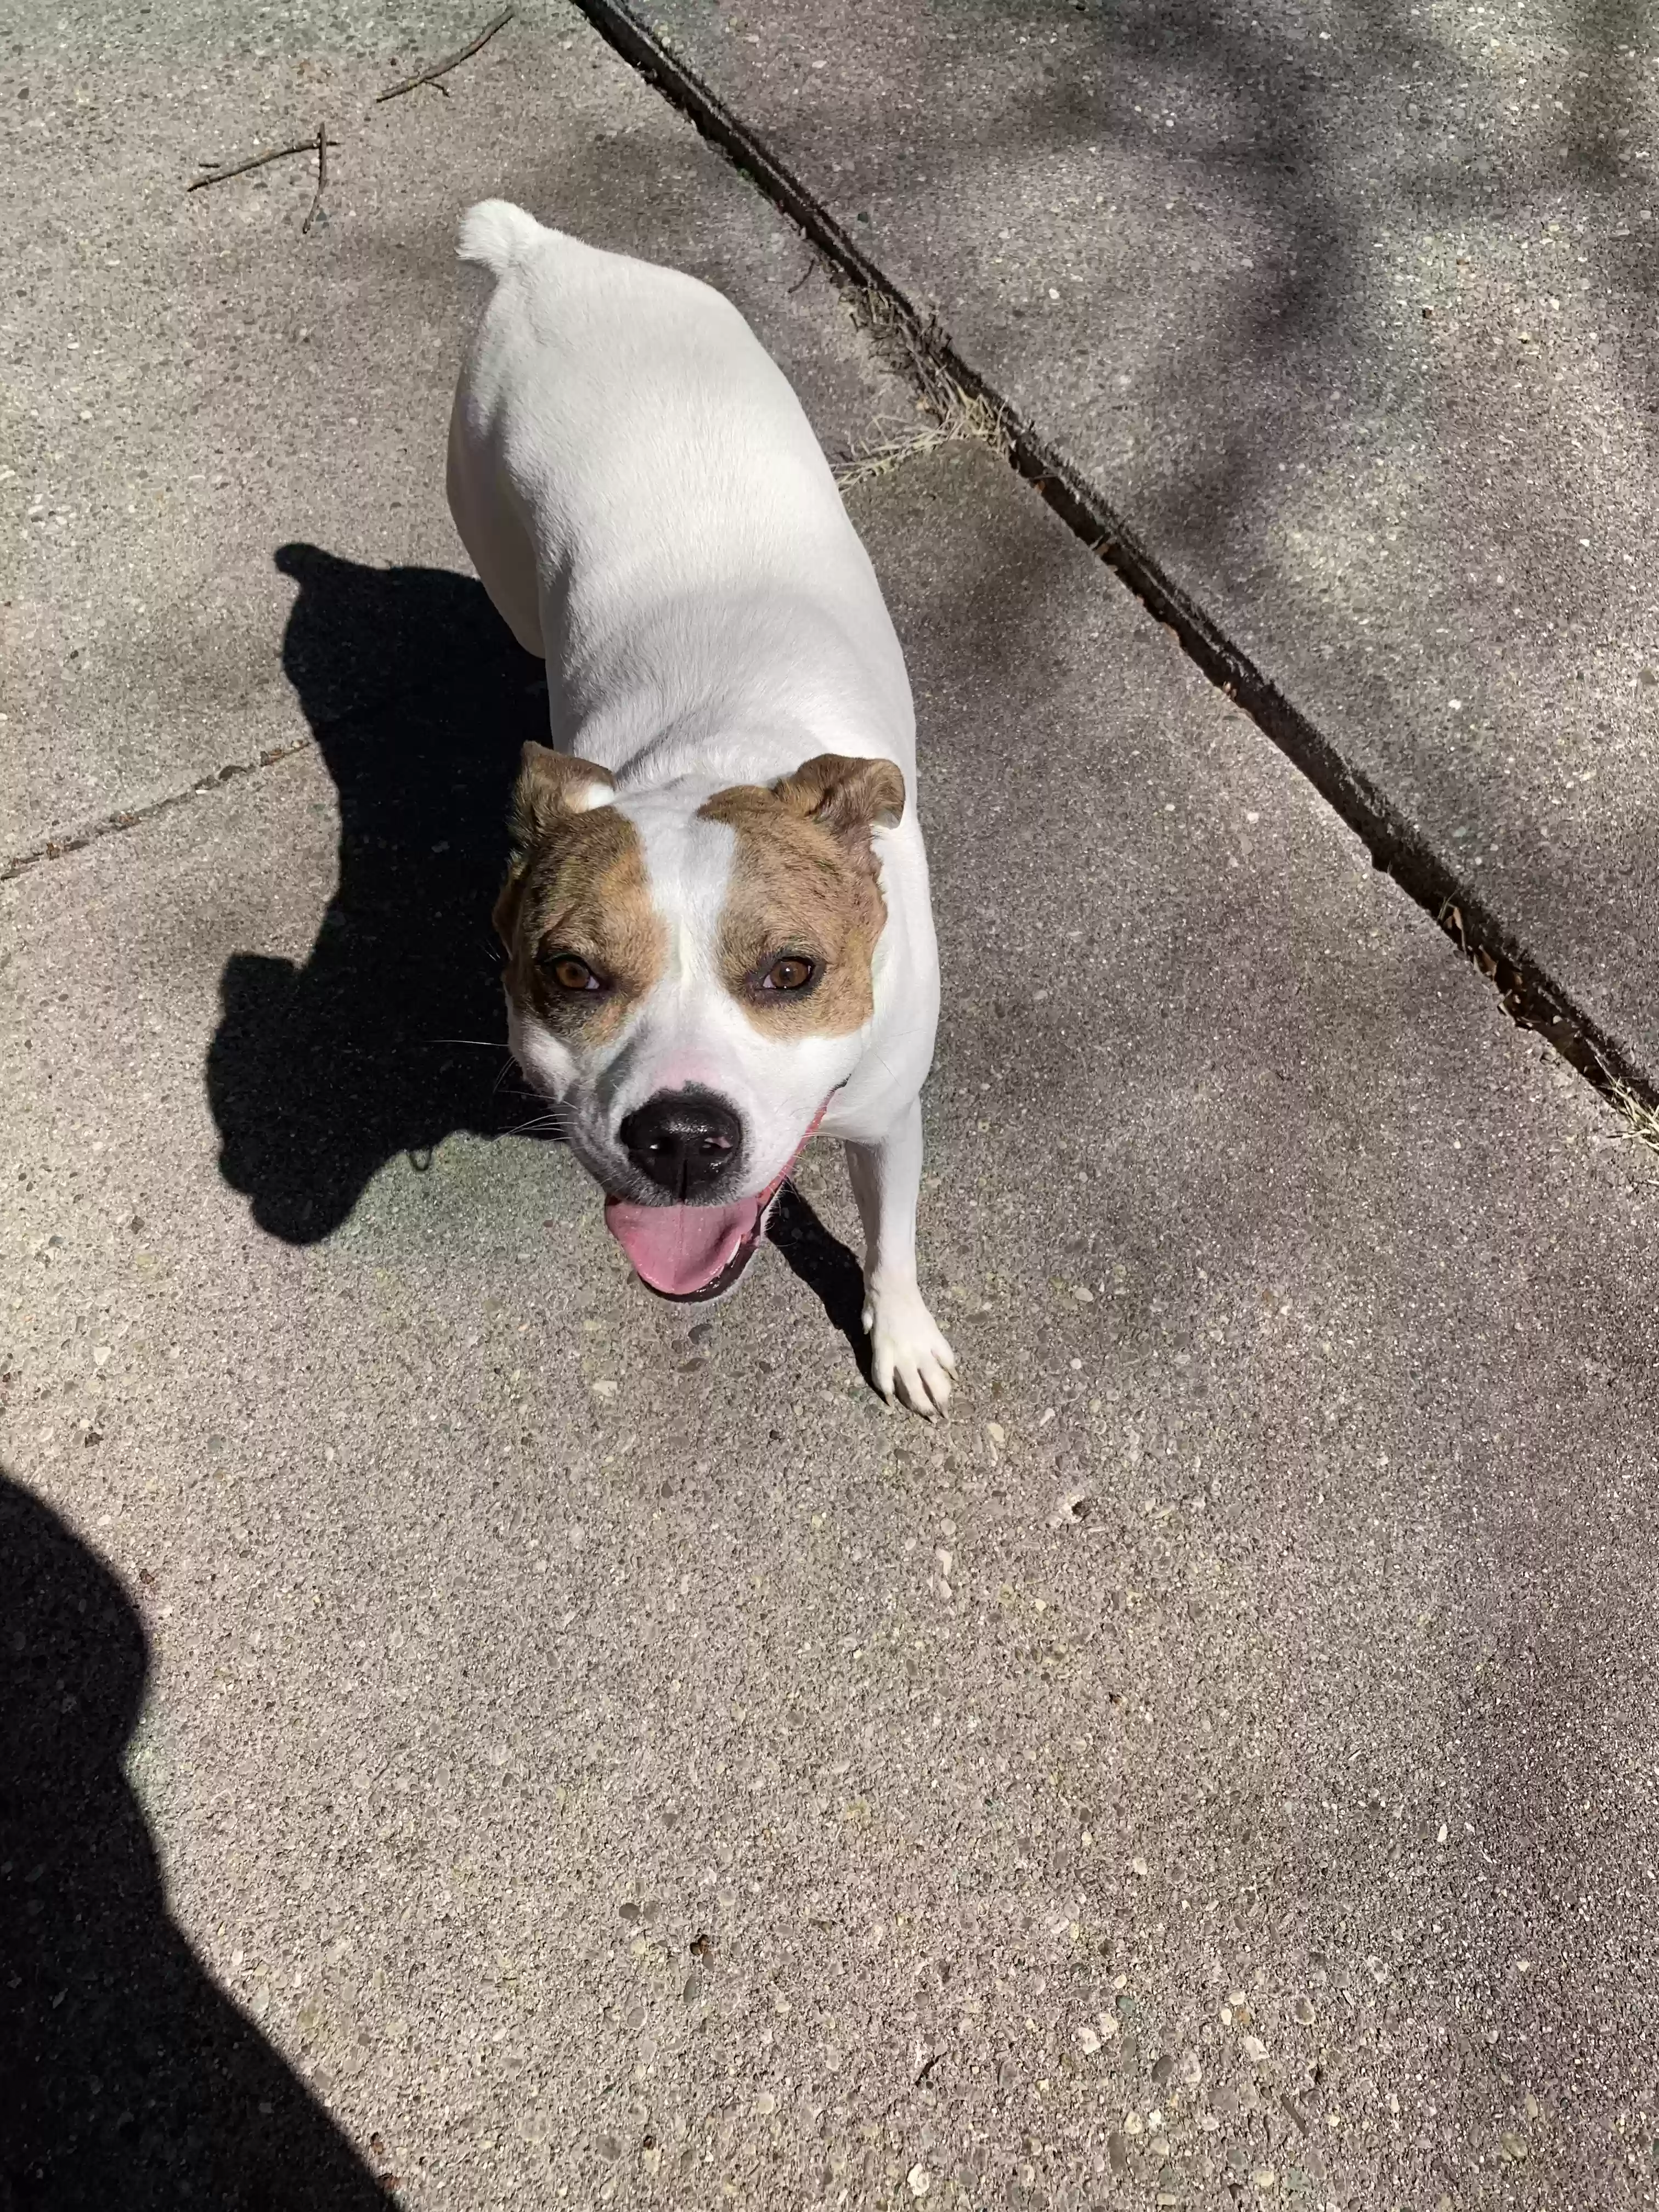 adoptable Dog in Cincinnati,OH named Daisy